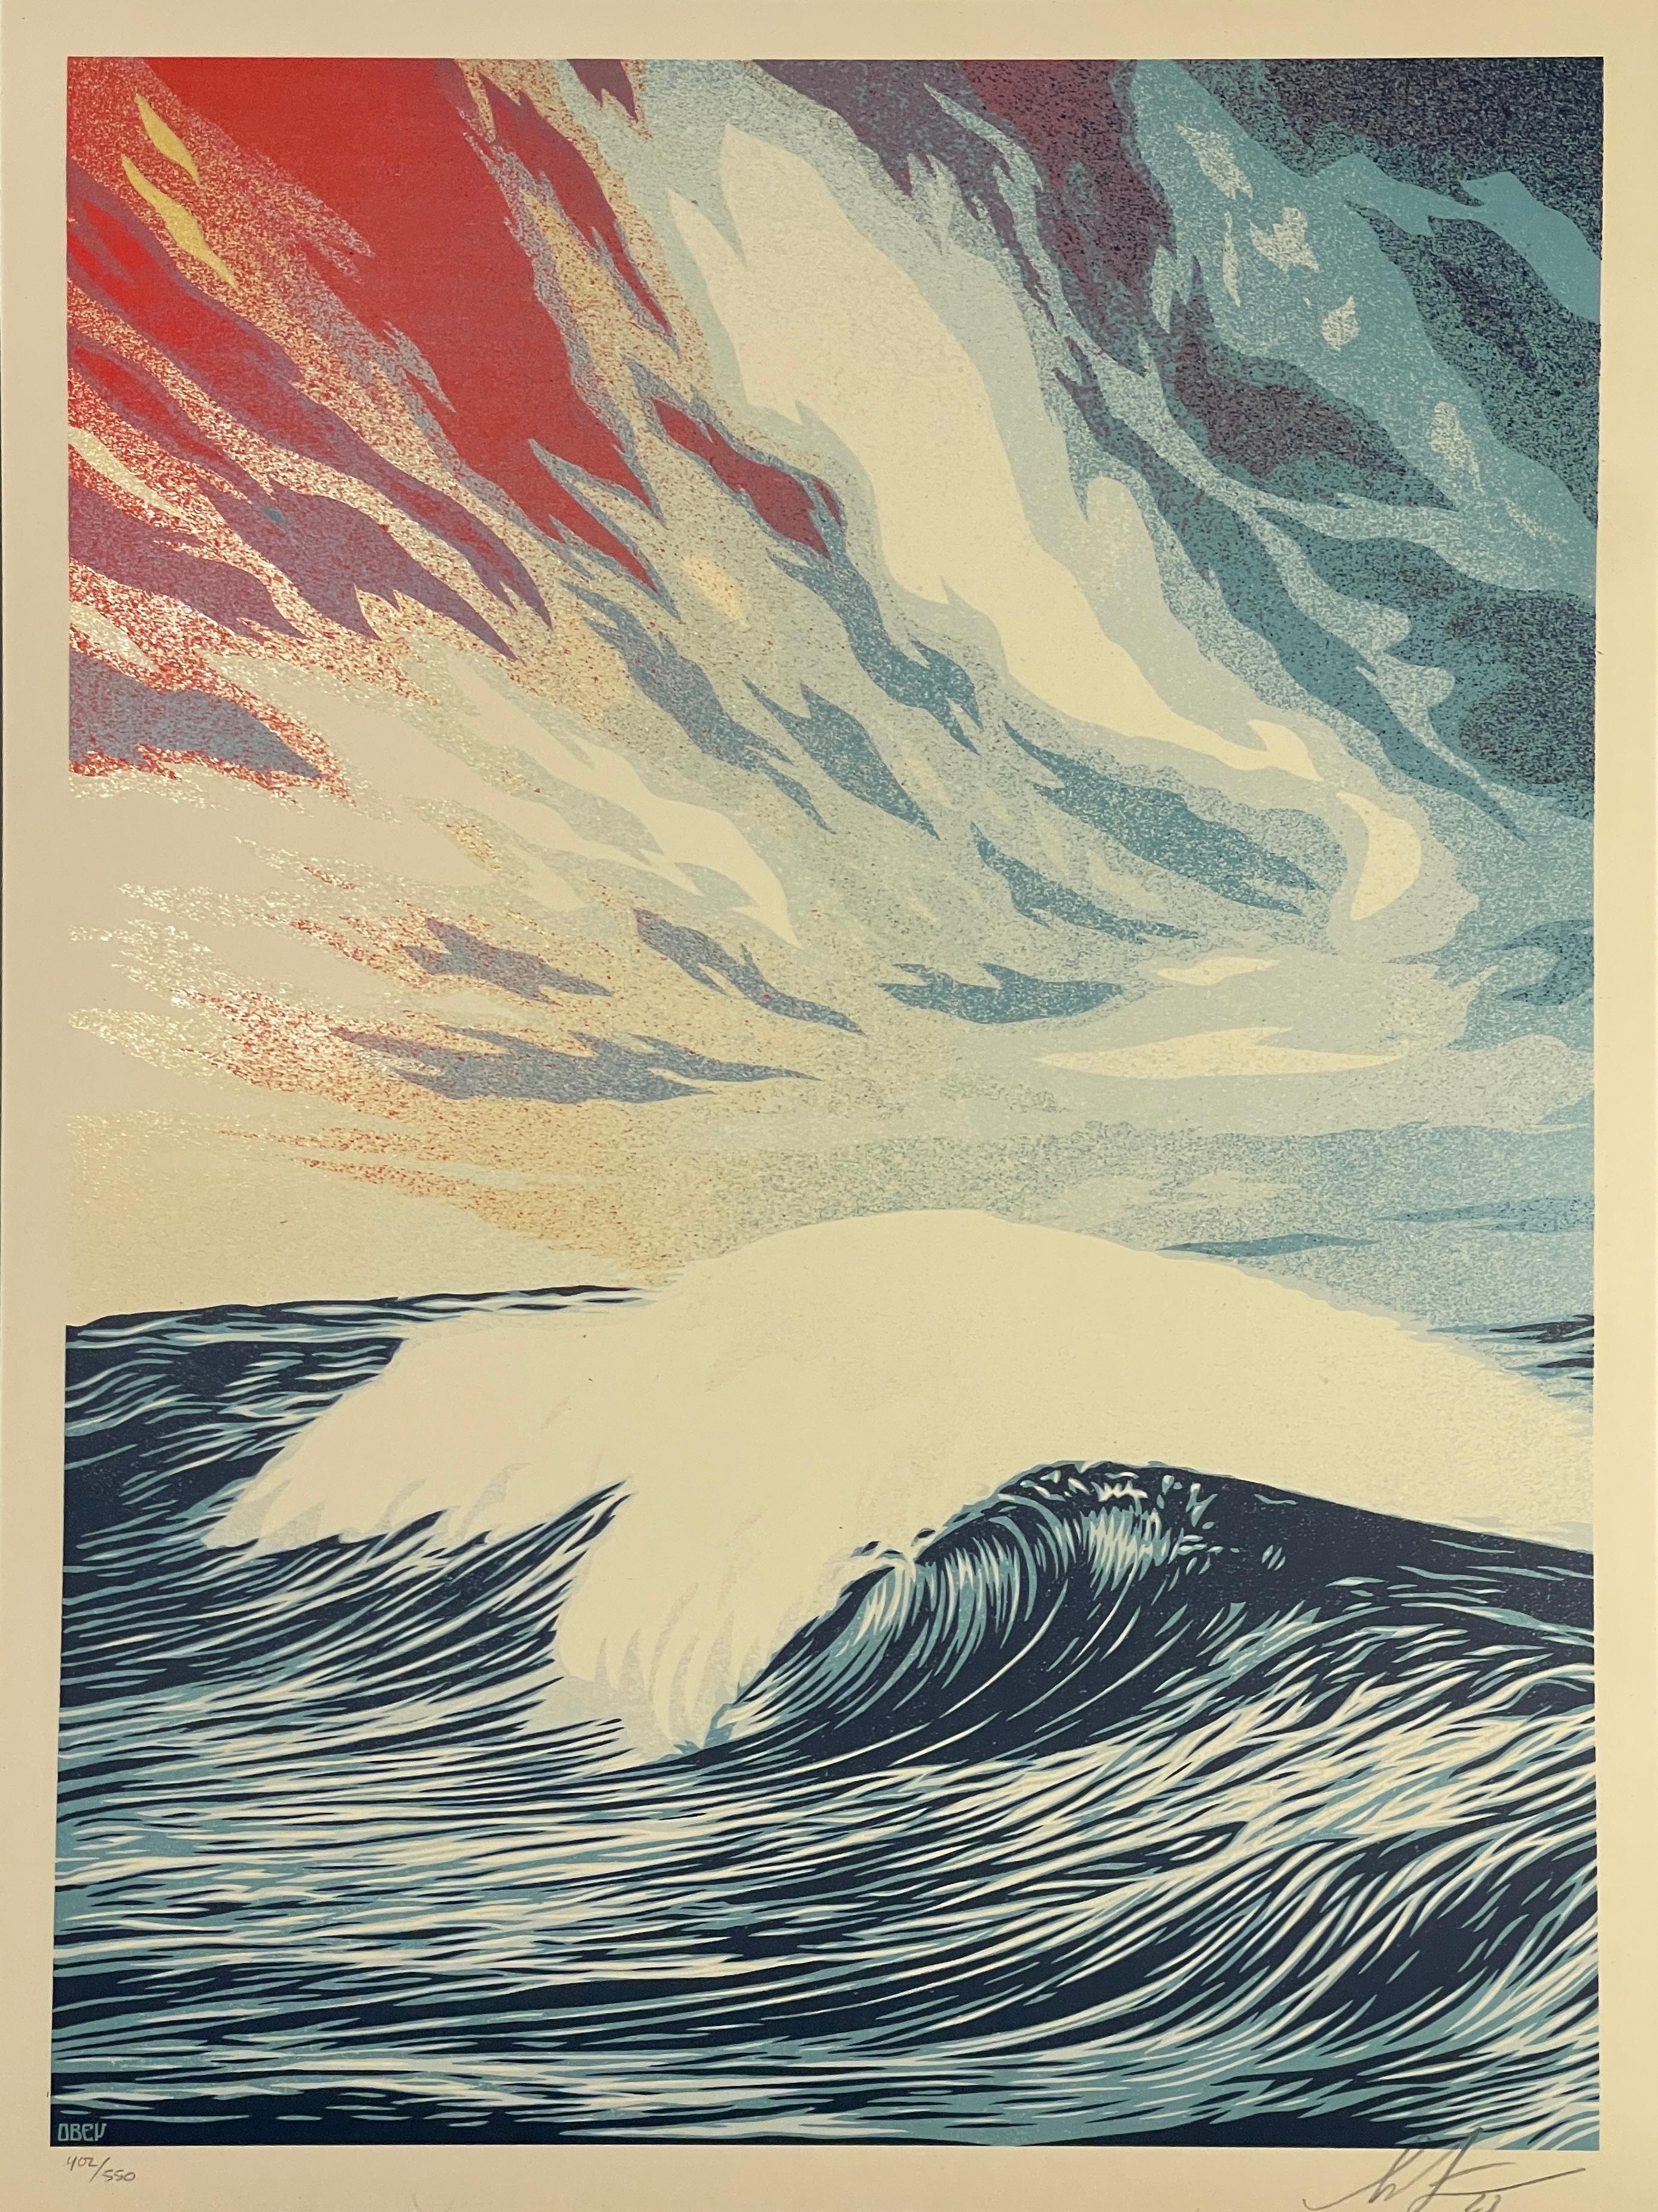 "Ein Fest der Natur und eine mahnende Erzählung zugleich. Wellen sind wunderschön und stellen einen kraftvollen, hypnotischen, rhythmischen Zyklus dar, aber wenn sie durch einen Sturm angeregt werden, können sie auch unglaublich zerstörerisch sein.